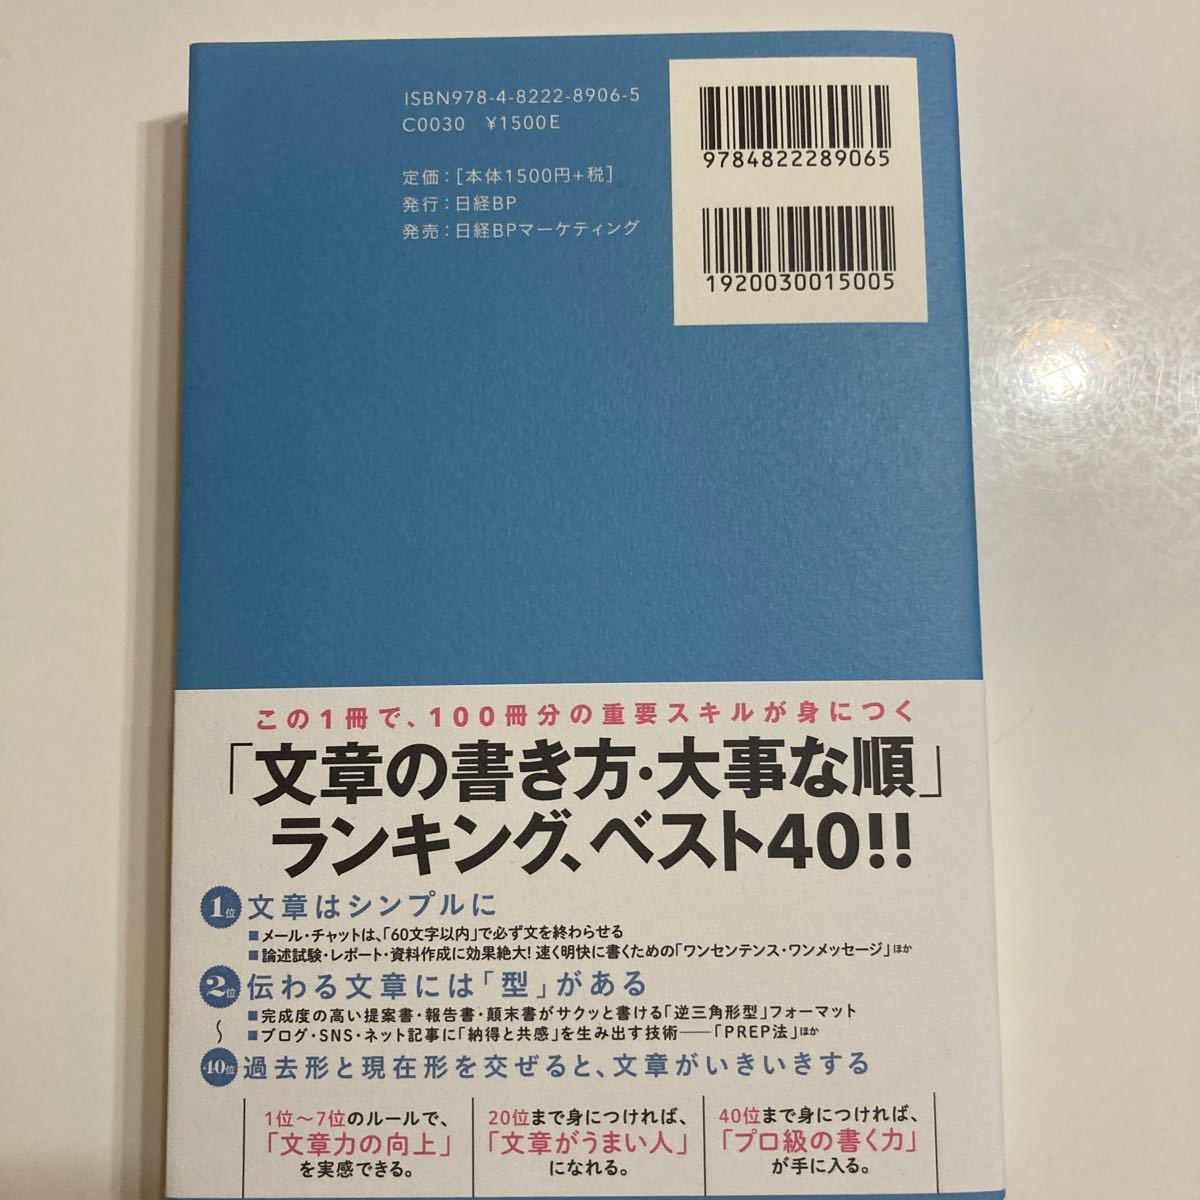  「文章術のベストセラー100冊」 のポイントを1冊にまとめてみた。 /藤吉豊/小川真理子